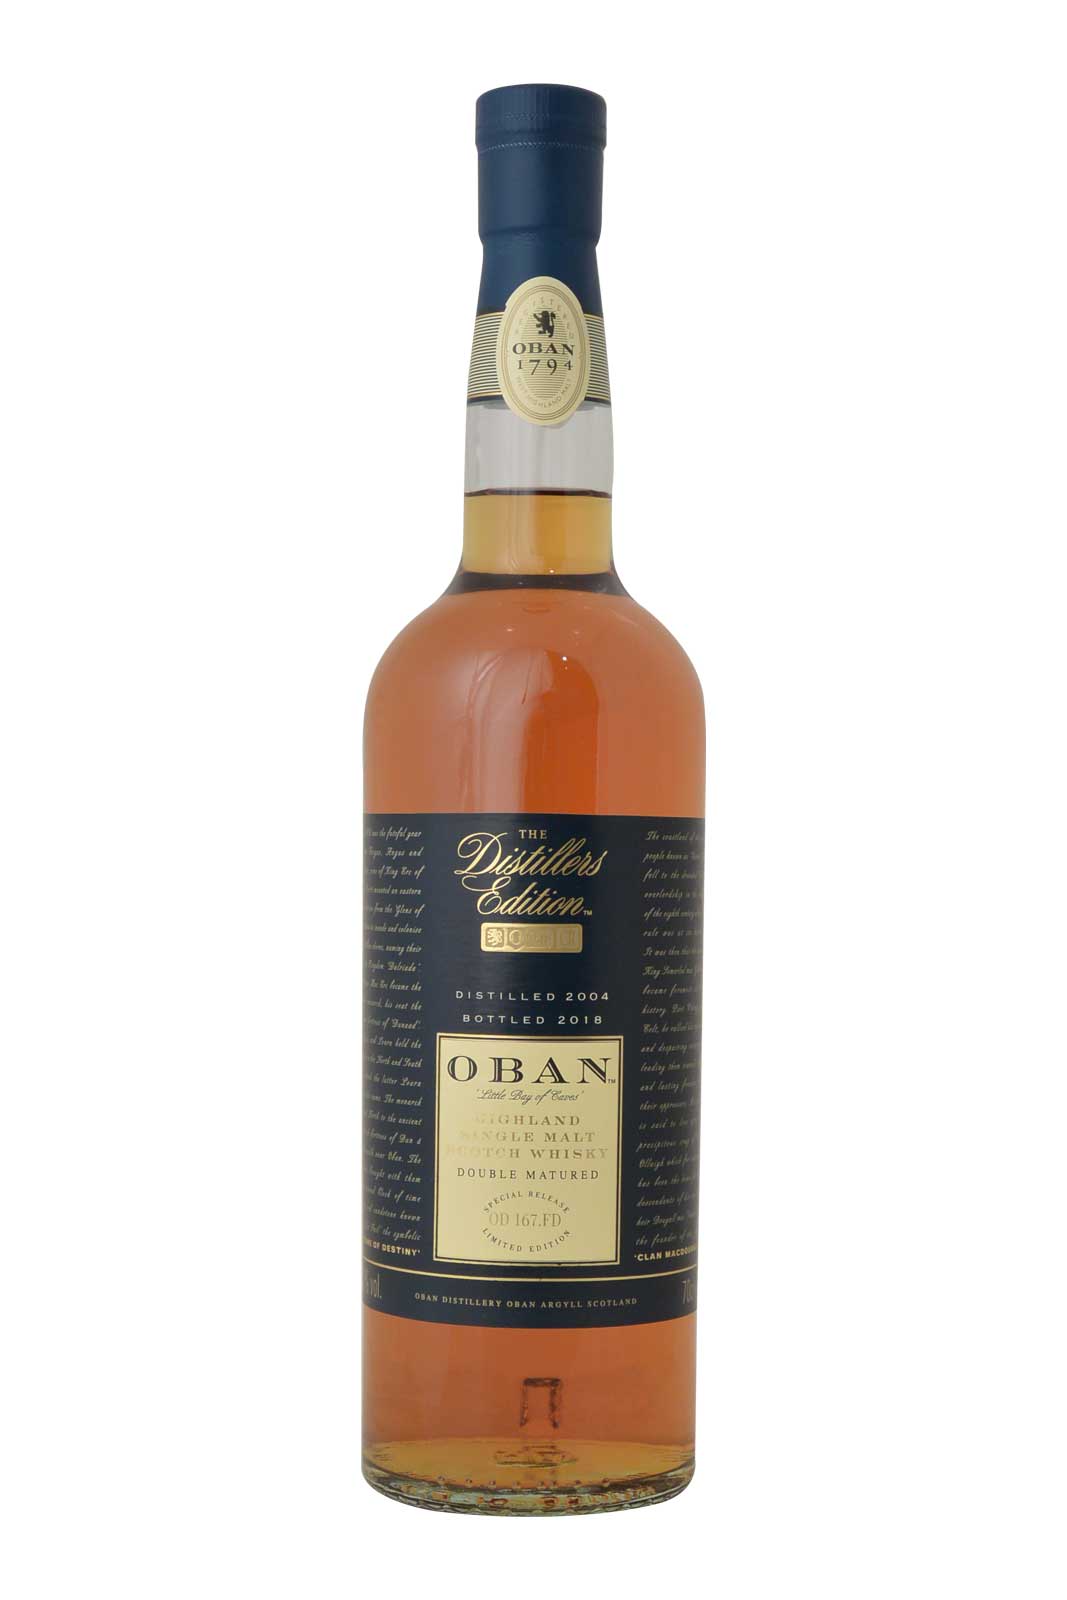 Oban Distillers Edition Distilled 2004 Bottled 2018